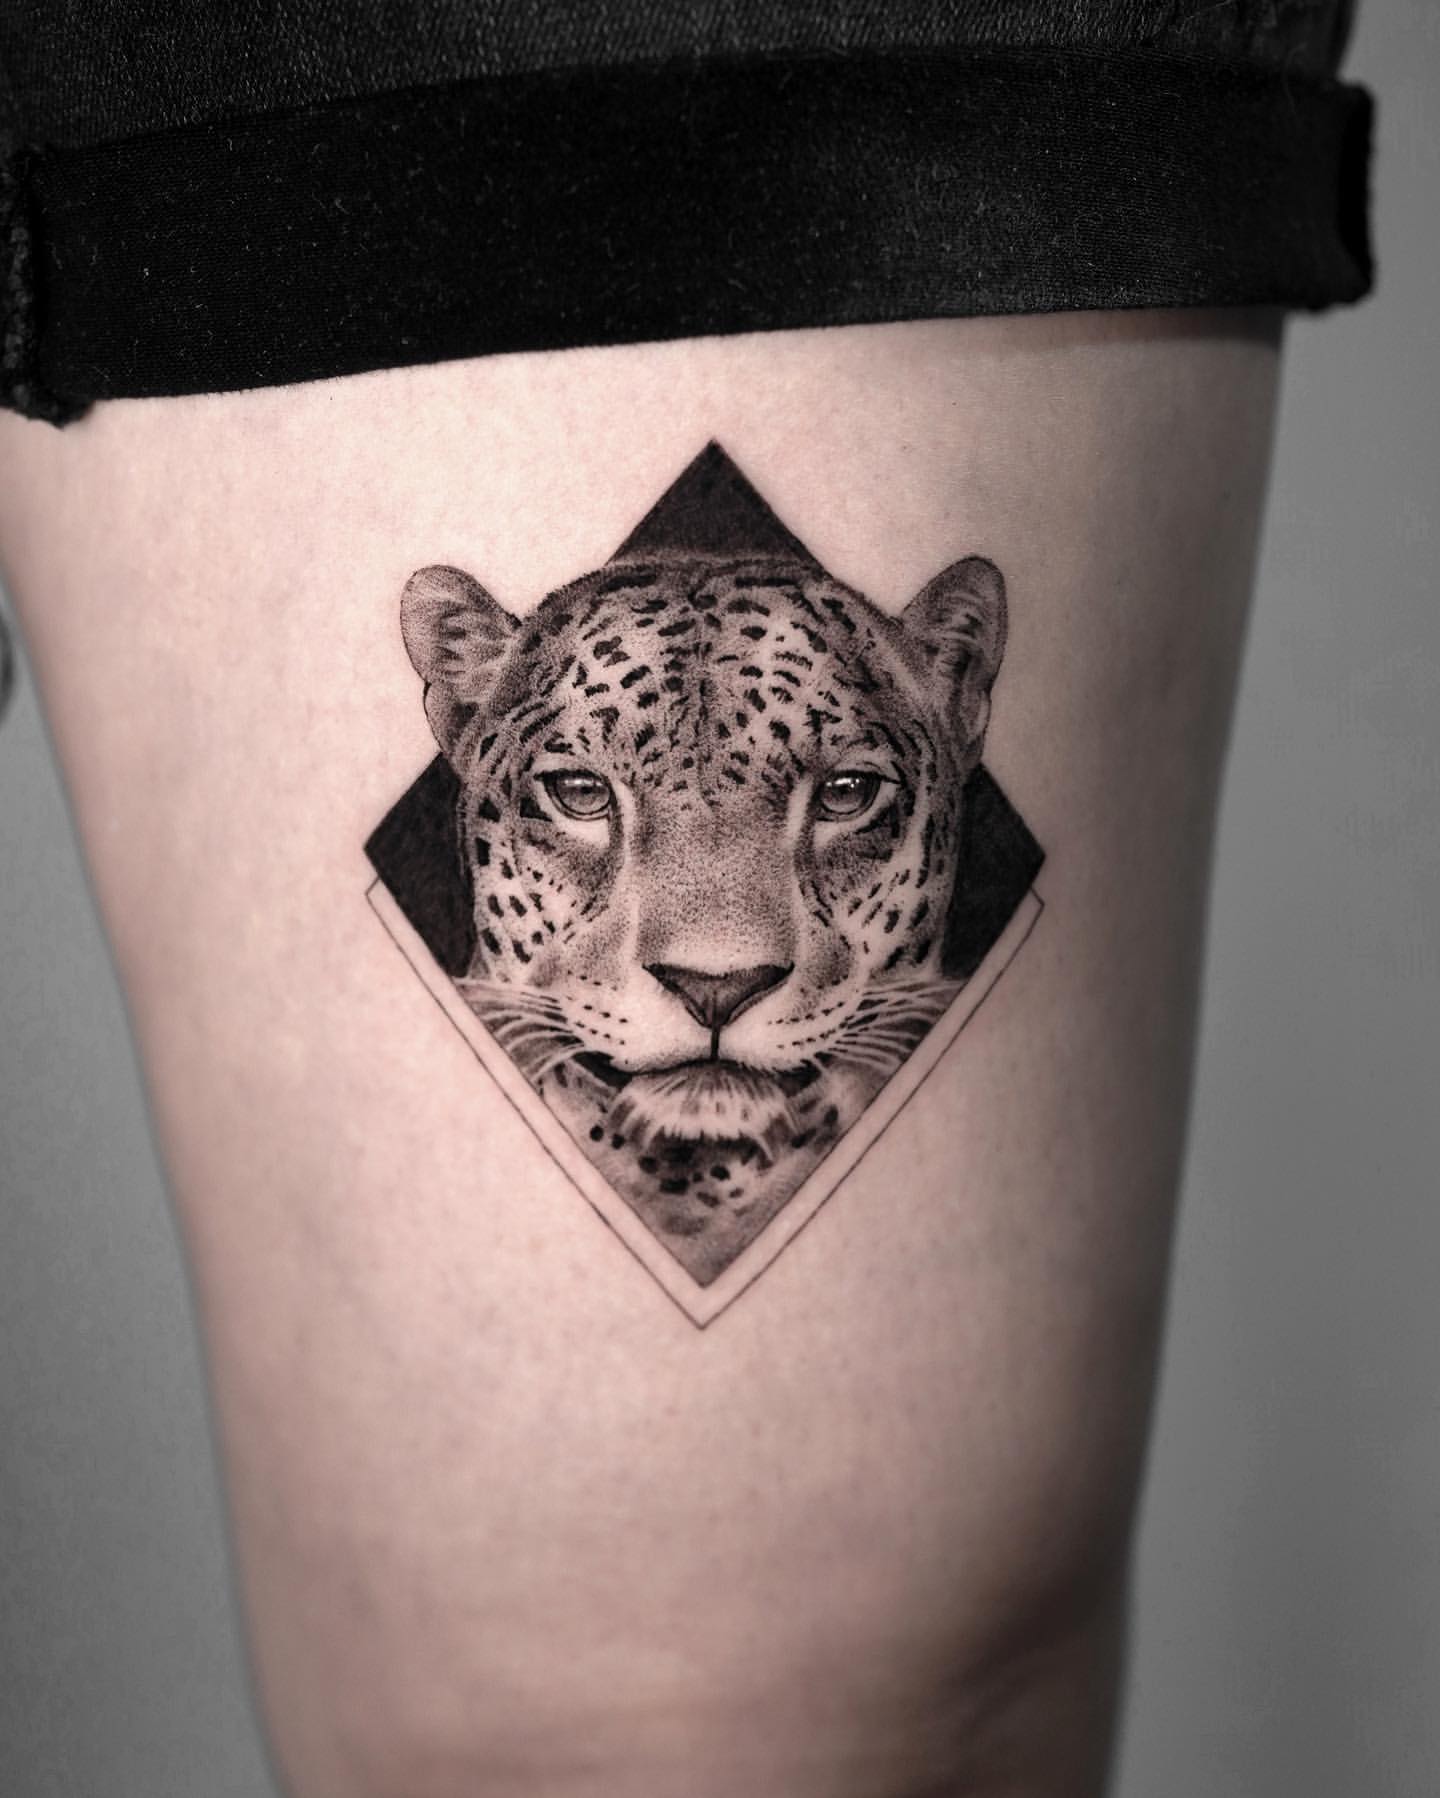 Leopard and Jaguar Tattoo Ideas 22